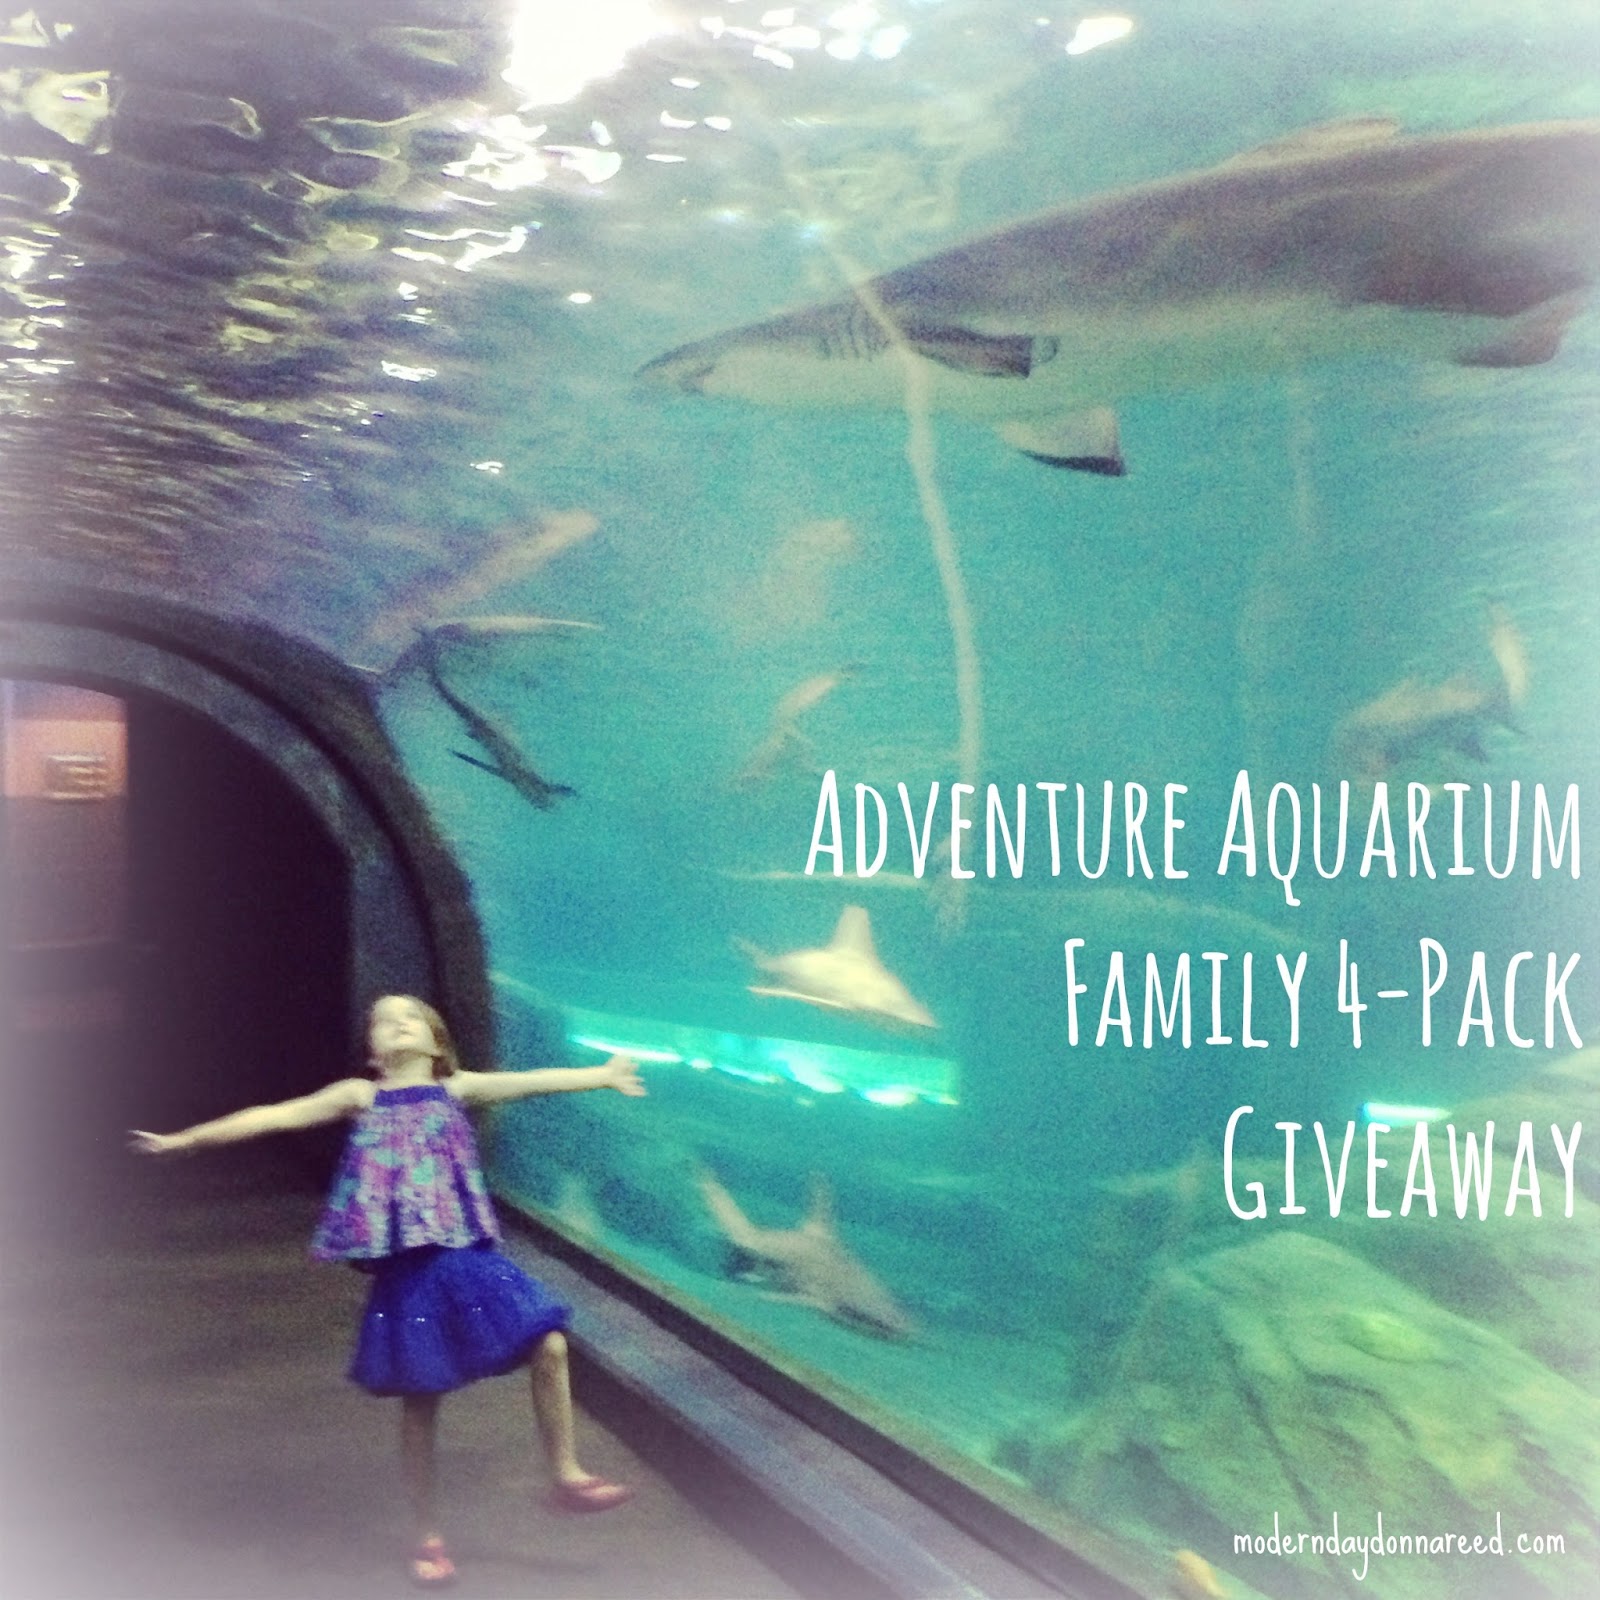 Adventure Aquarium Giveaway: Family 4-Pack of Tickets - ADventure Aquarium